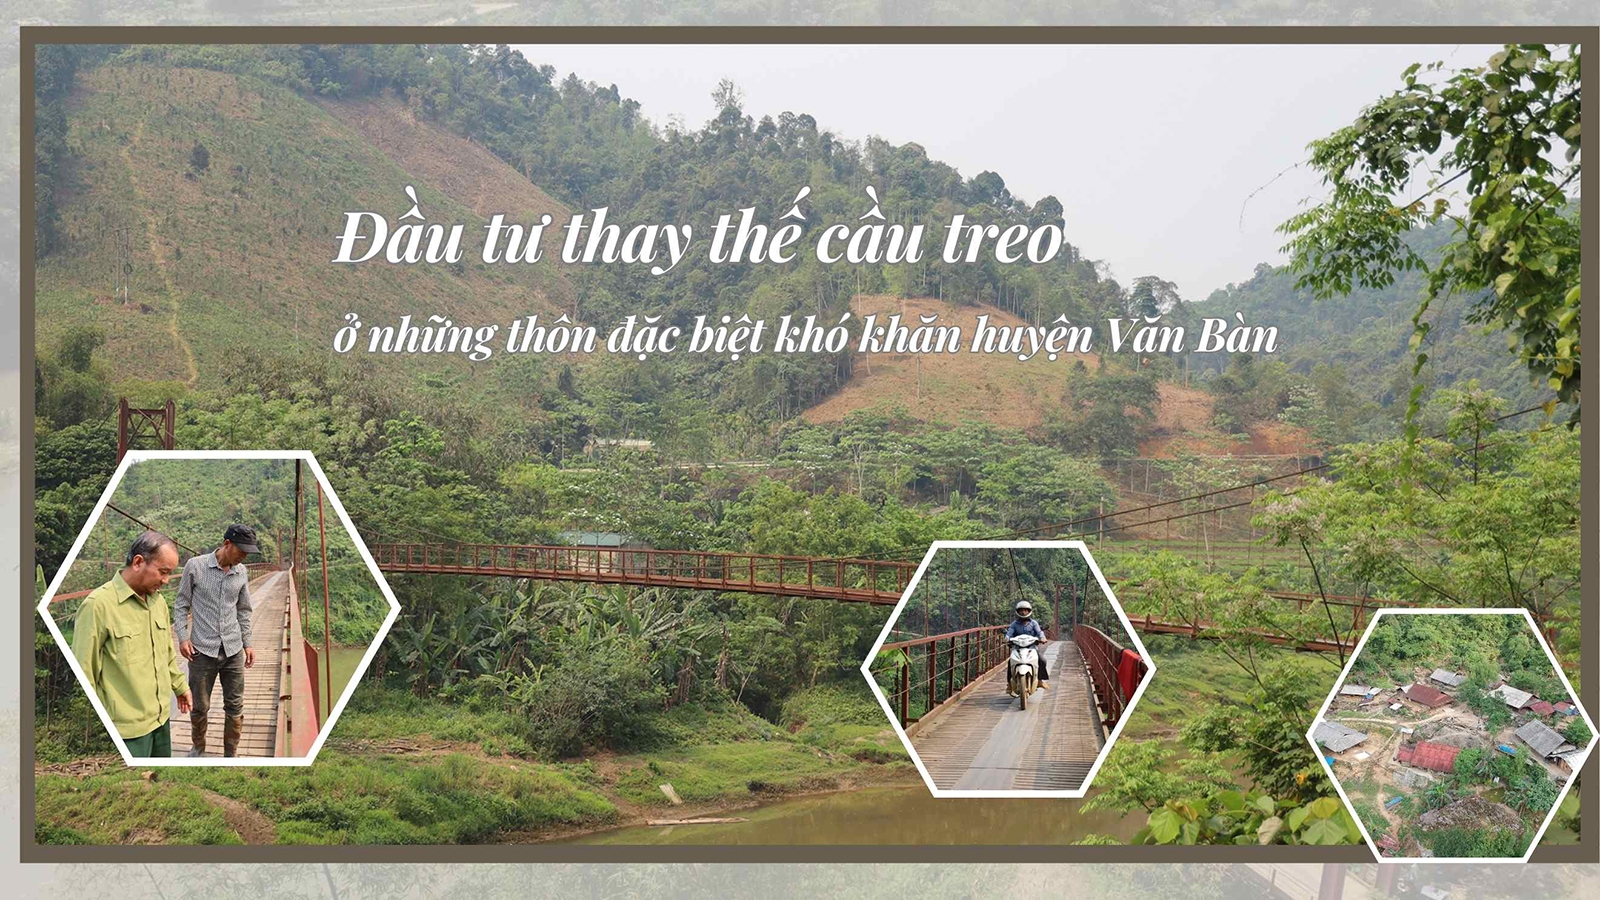 Đầu tư thay thế cầu treo ở những thôn đặc biệt khó khăn huyện Văn Bàn